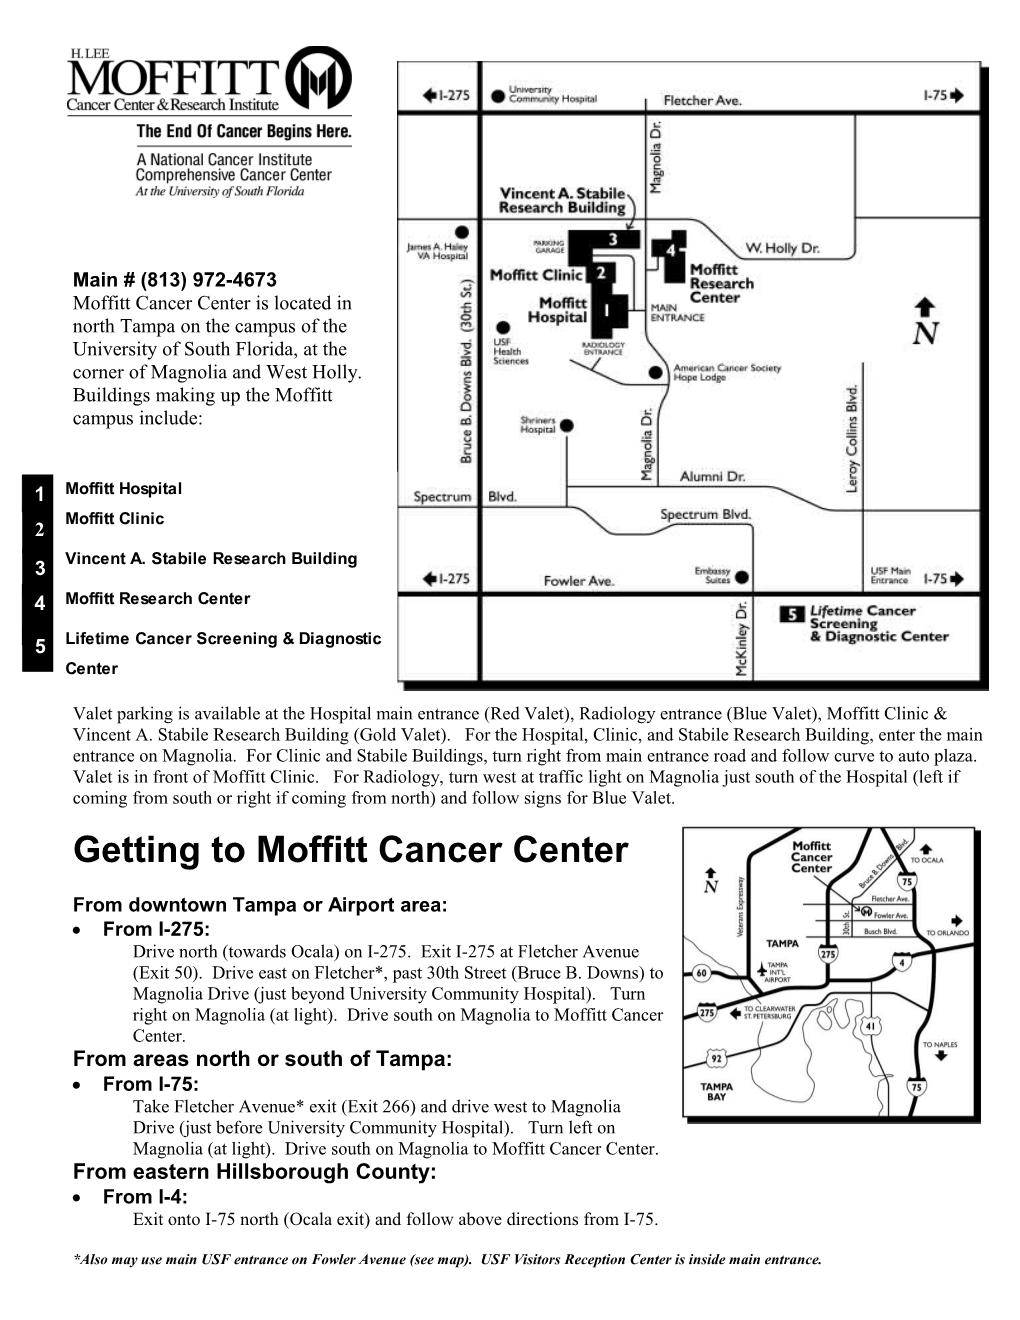 Getting to Moffitt Cancer Center